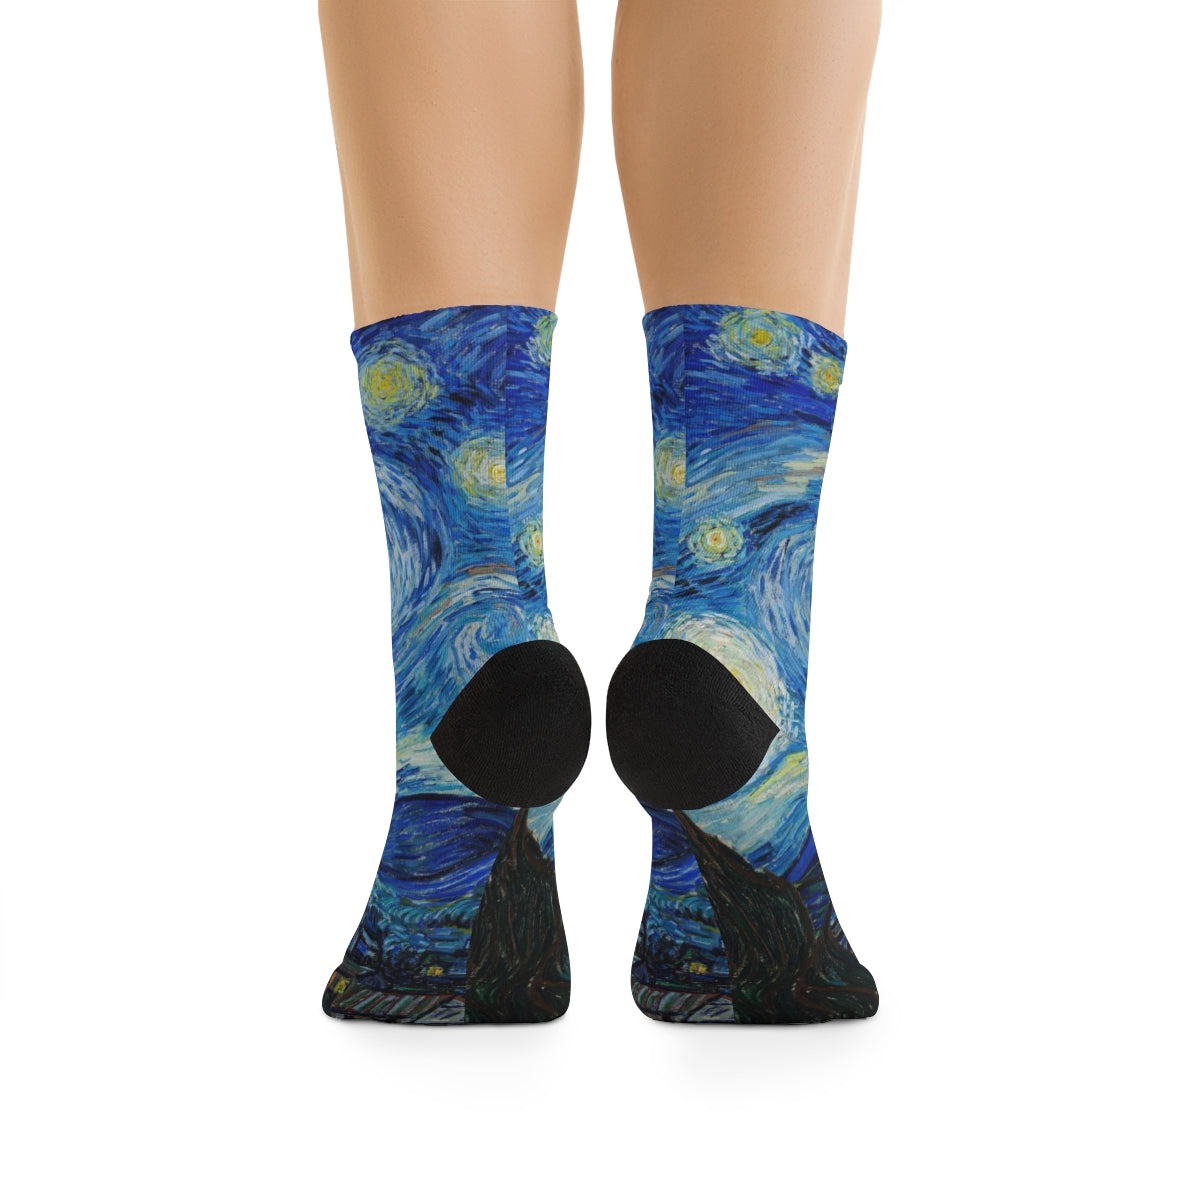 Starry Socks